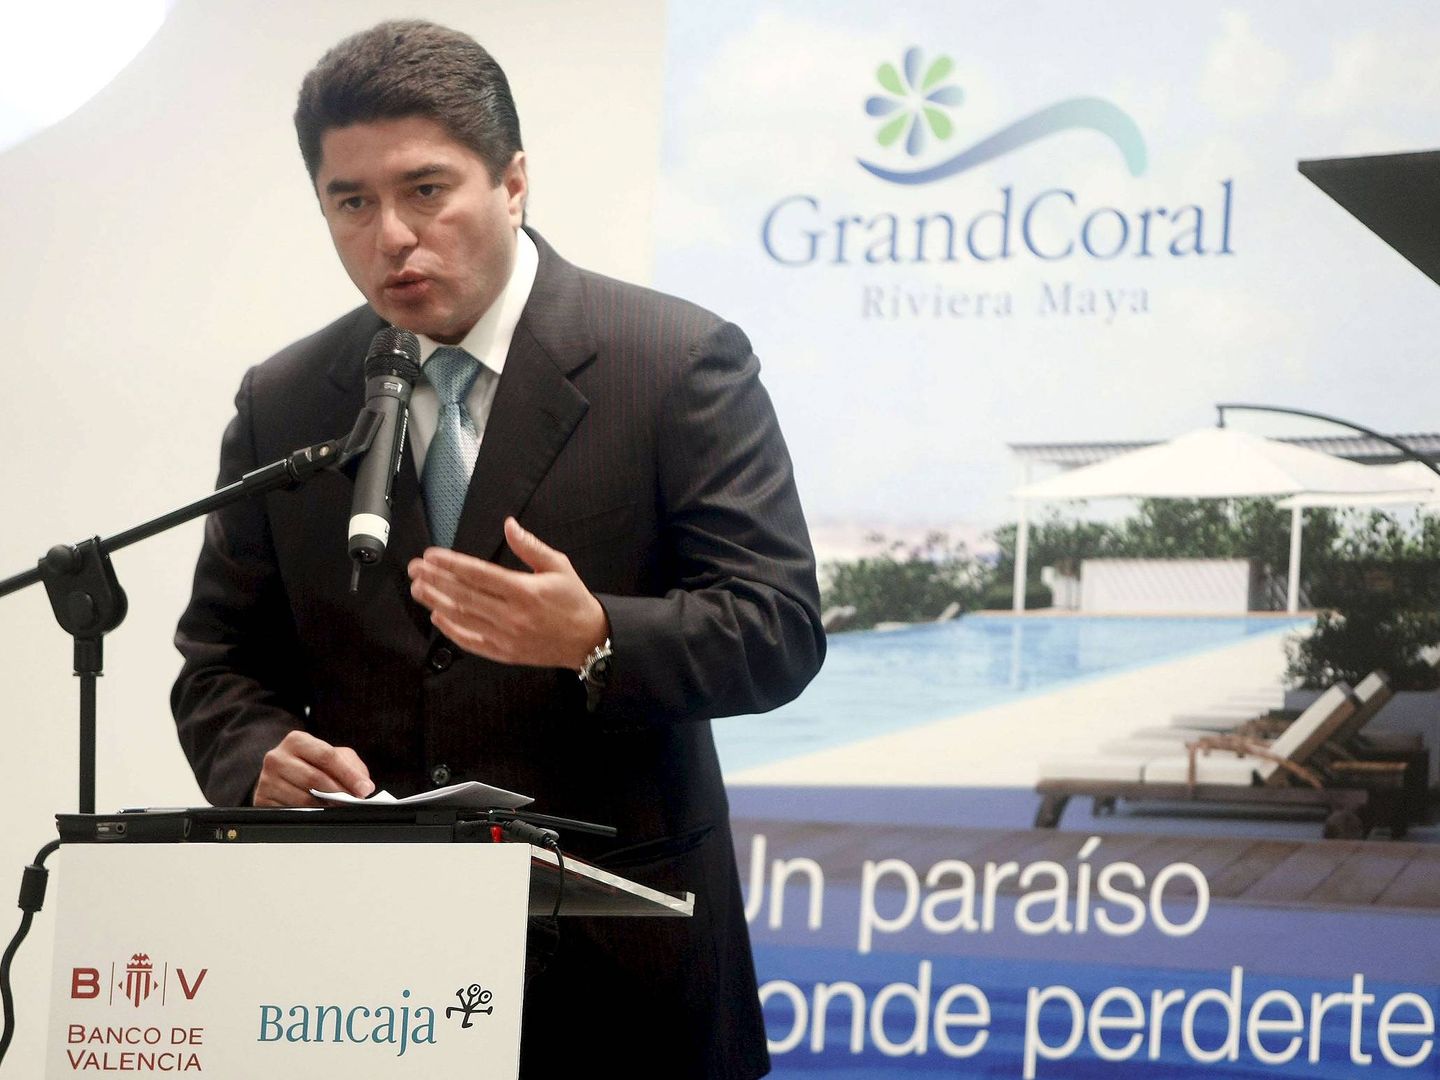 El exgobernador del estado mexicano de Quintana Roo, Félix González Canto, en una presentación en Valencia de los proyectos de Grand Coral. (EFE)